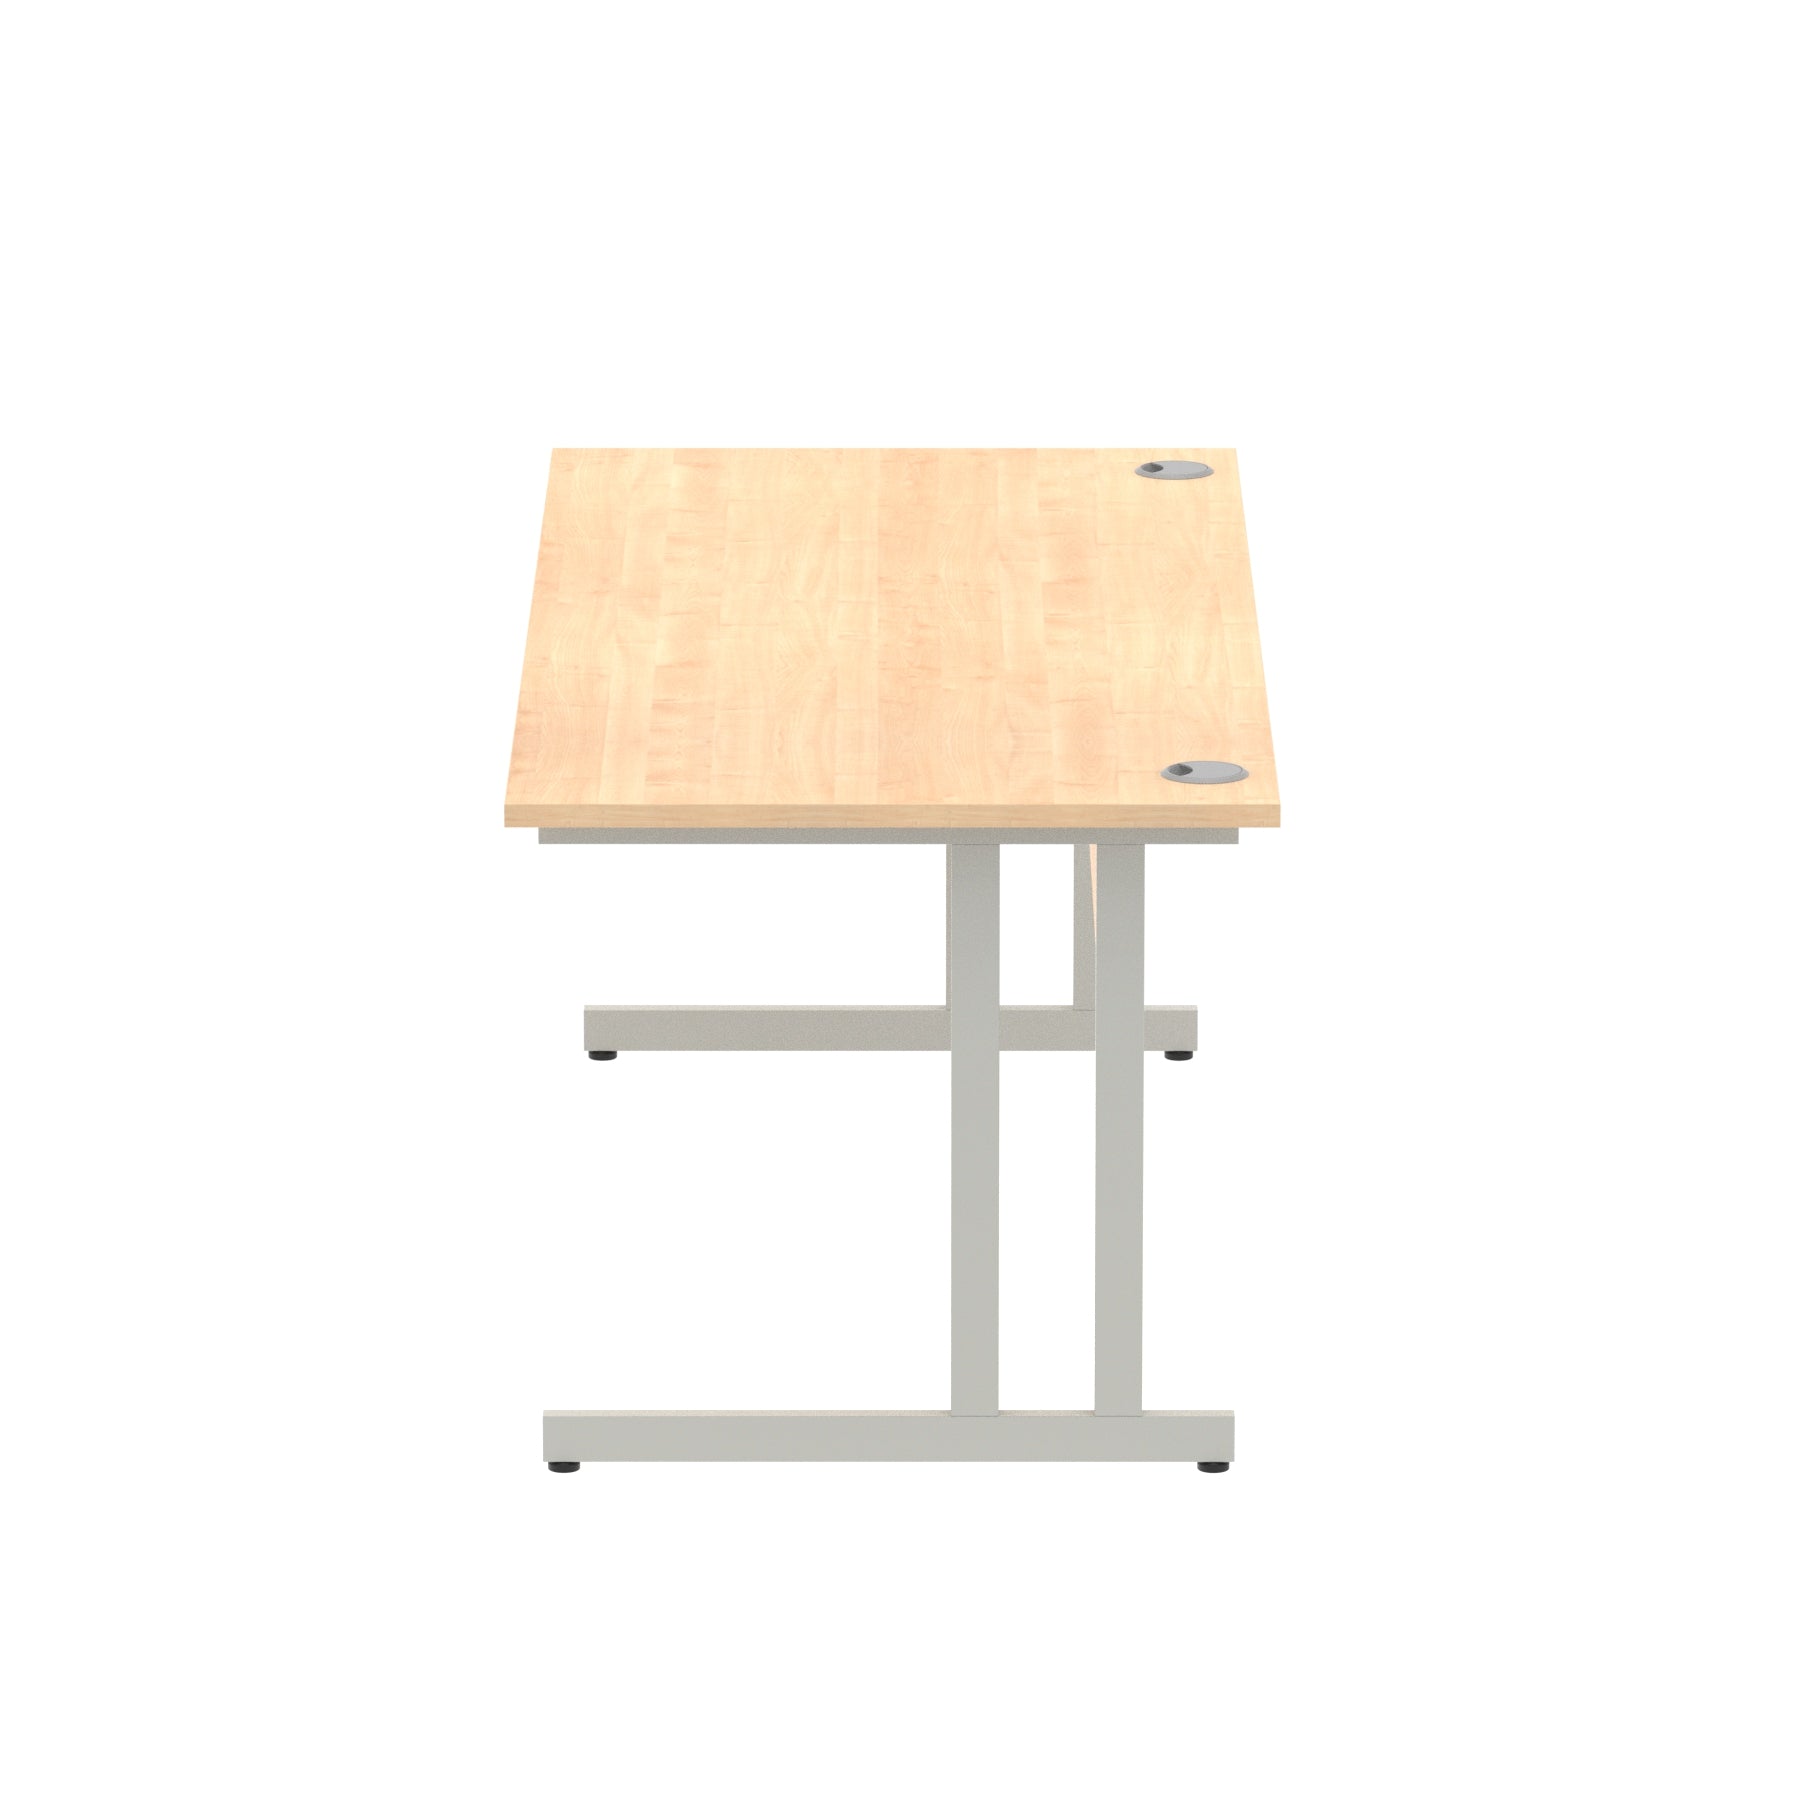 Impulse 1800mm Straight Desk Cantilever Leg